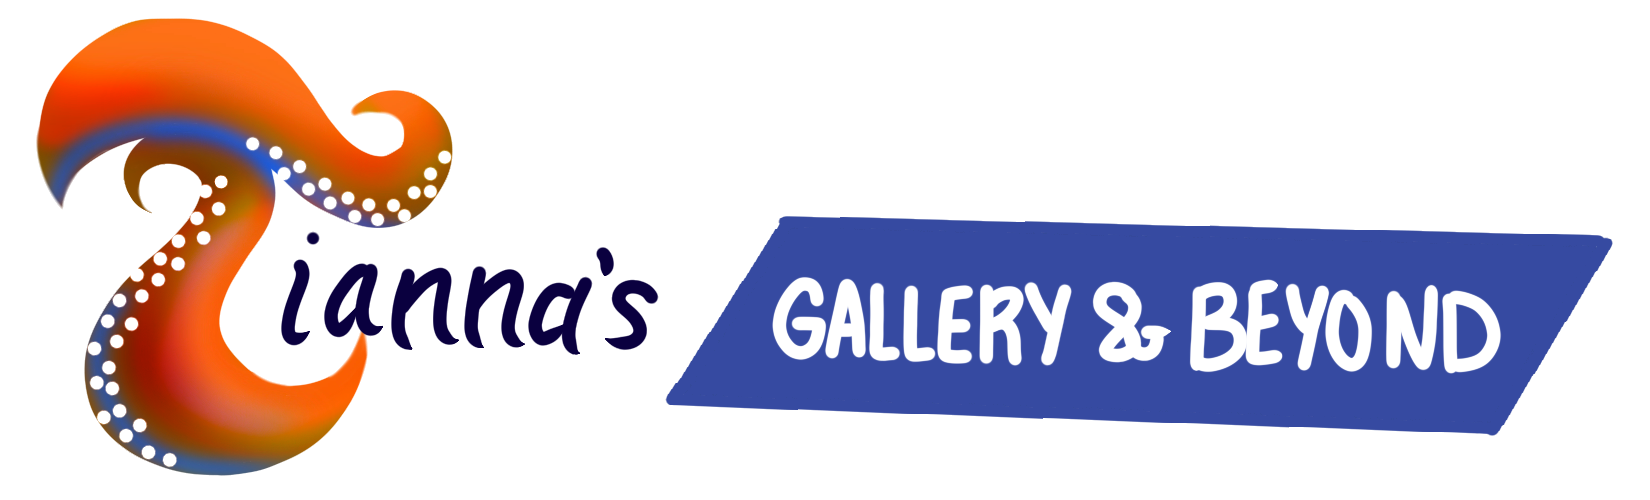 Tiannas Gallery and Beyond logo3. Tiannas Gallery & Beyond content. Tiannas Gallery and Beyond.